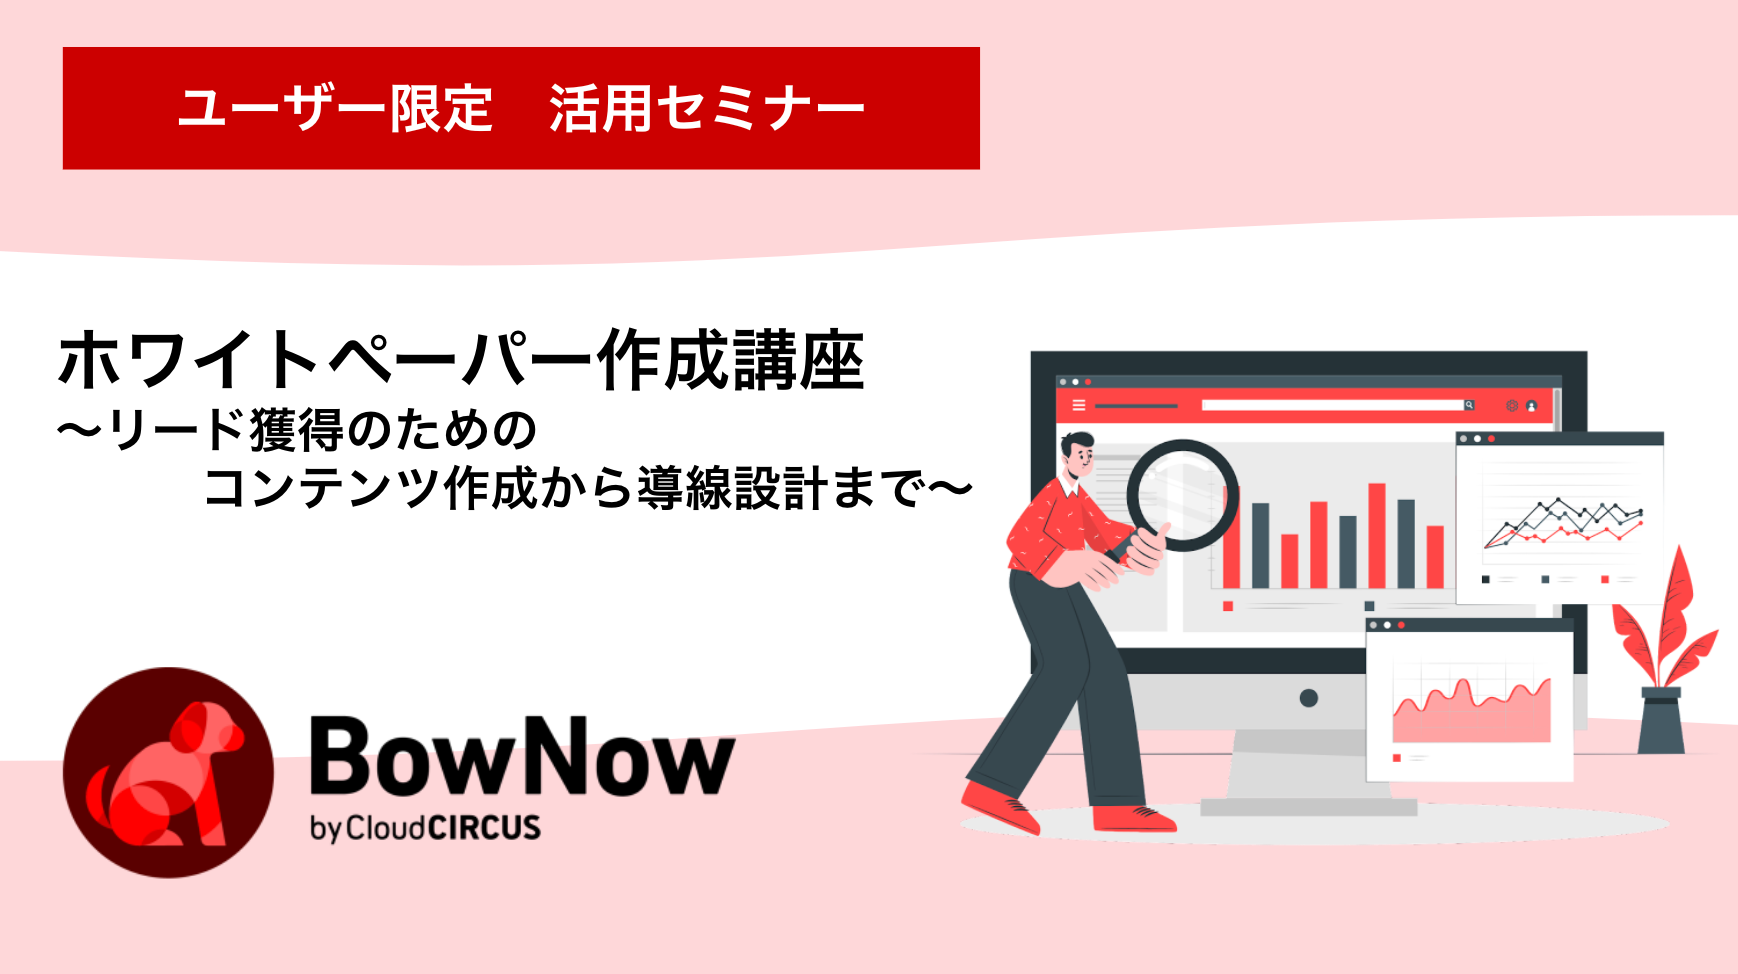 【3月1日(火)】Bownowを最大限生かすためのWEBサイトの考え方・運用方法・集客方法について